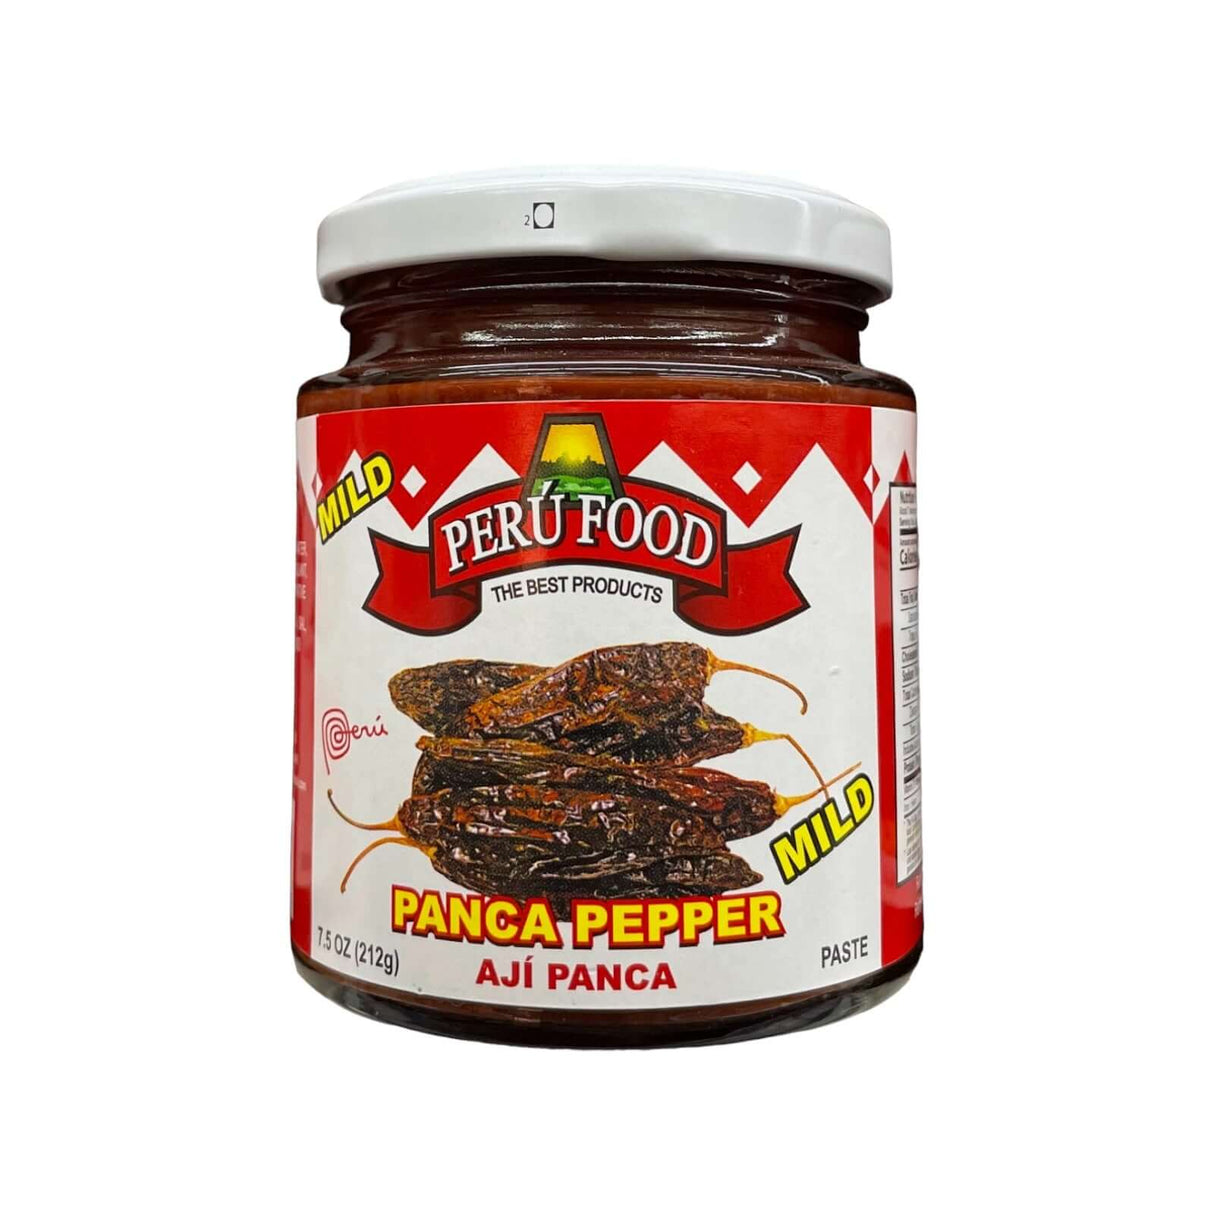 Peru Food Panca Pepper Mild (Aji Panca) Paste